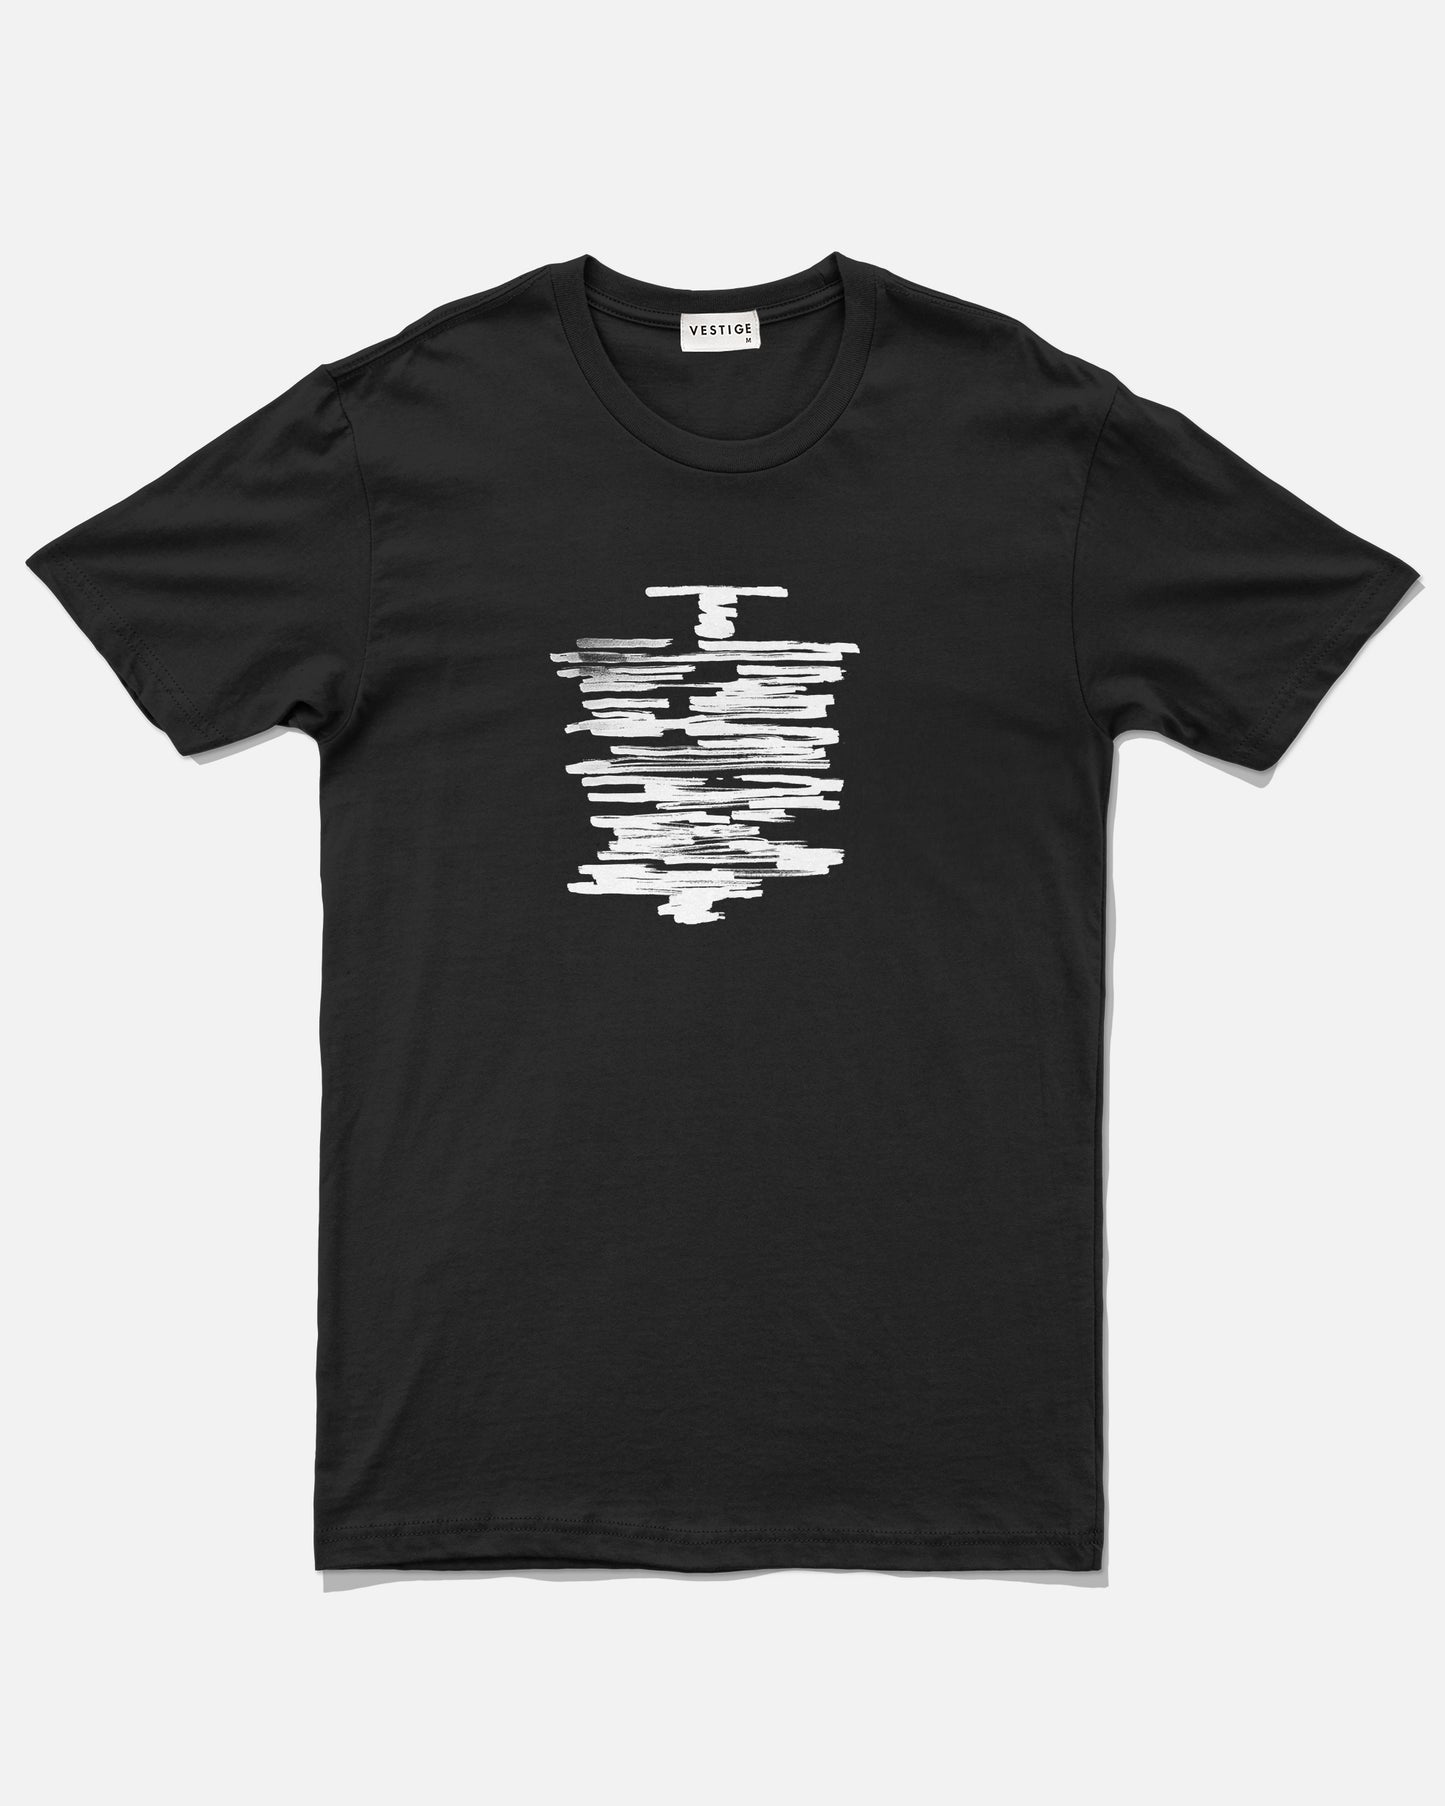 TNT T-Shirt, Black